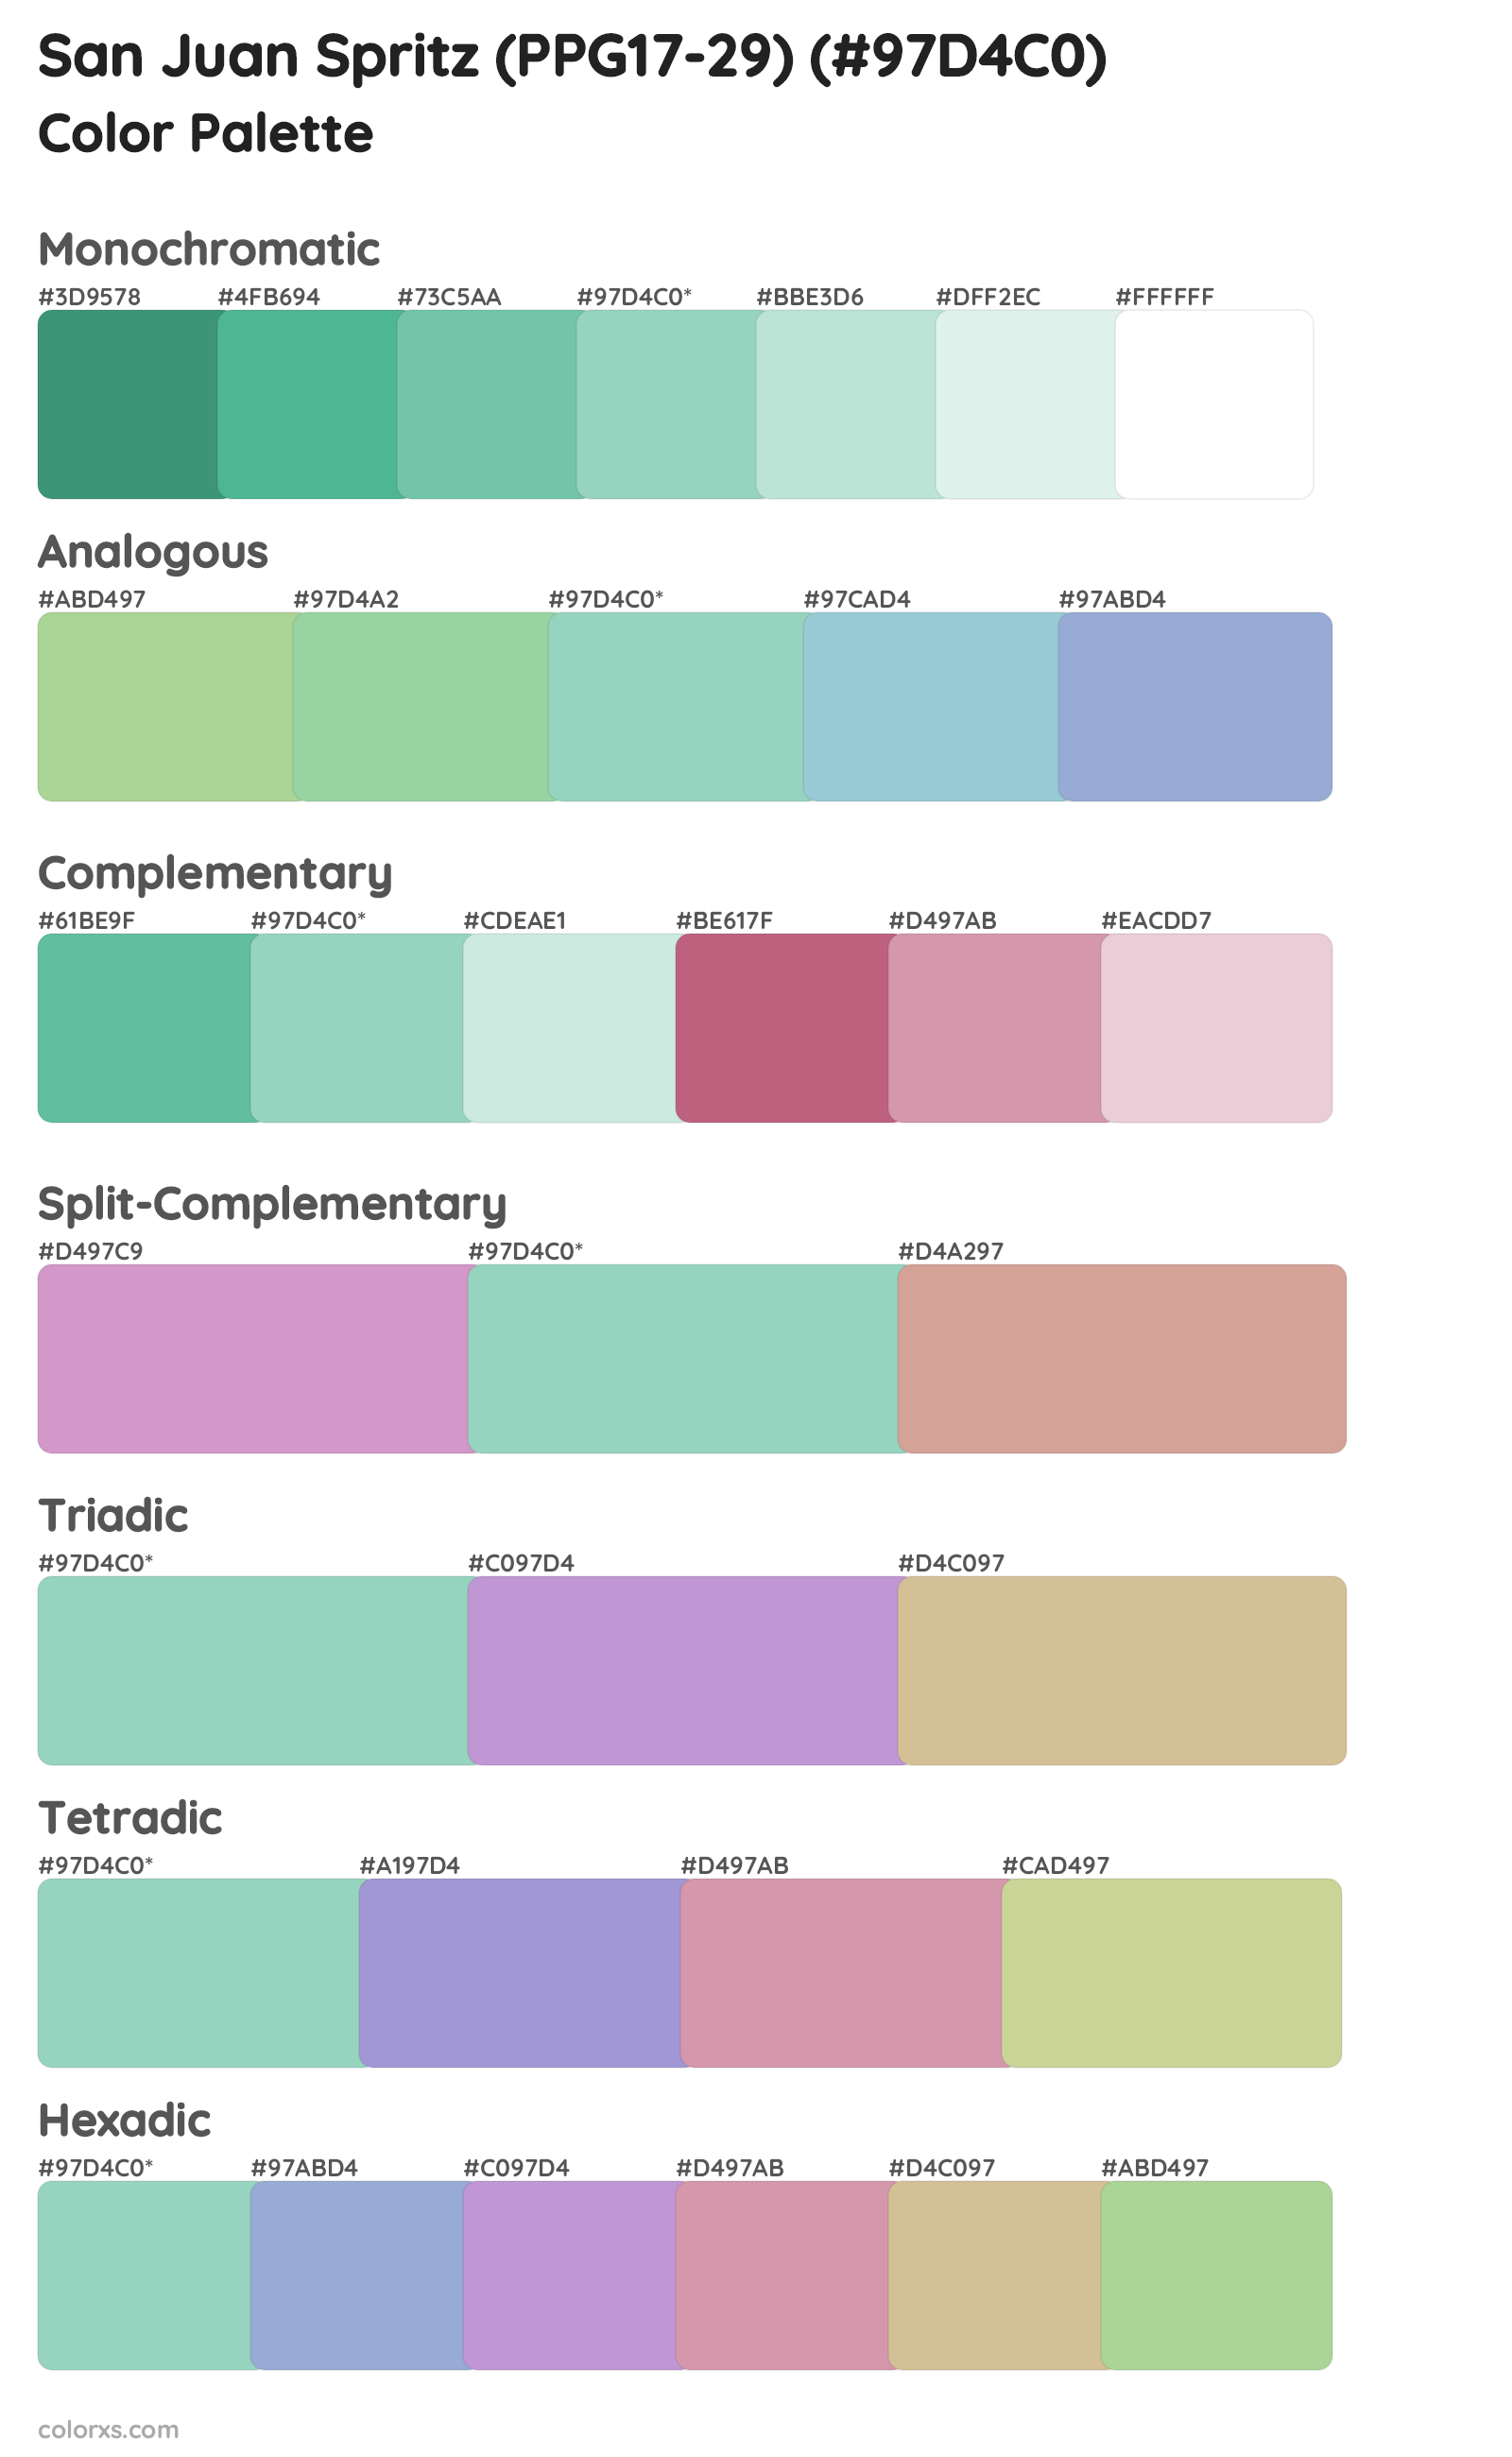 San Juan Spritz (PPG17-29) Color Scheme Palettes